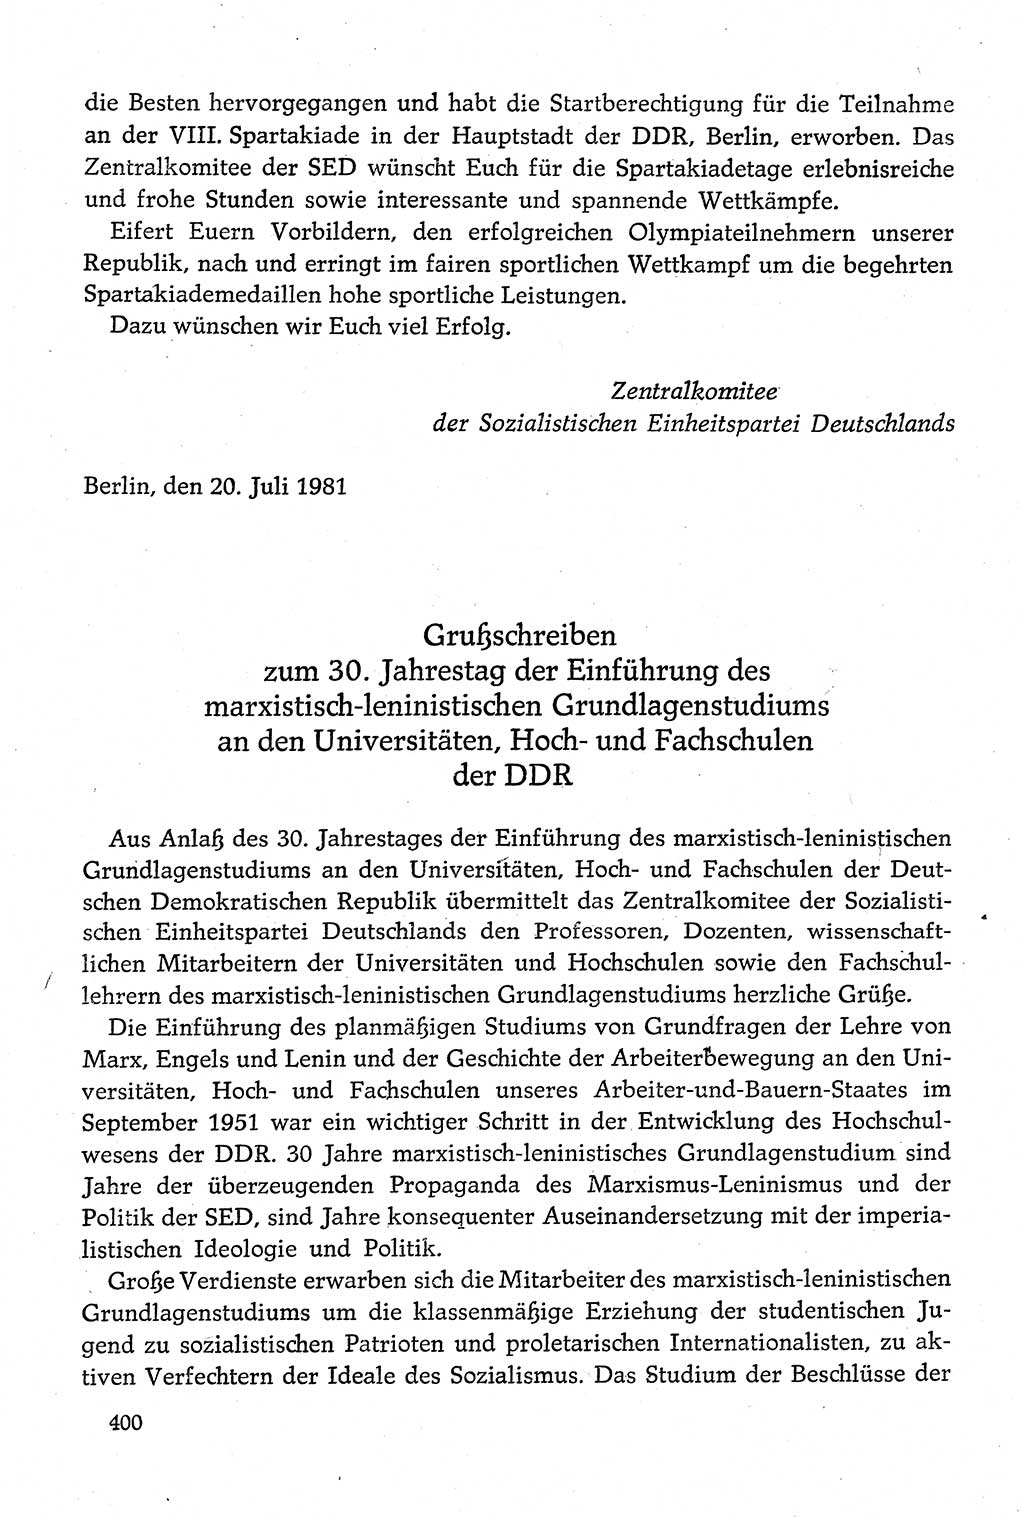 Dokumente der Sozialistischen Einheitspartei Deutschlands (SED) [Deutsche Demokratische Republik (DDR)] 1980-1981, Seite 400 (Dok. SED DDR 1980-1981, S. 400)